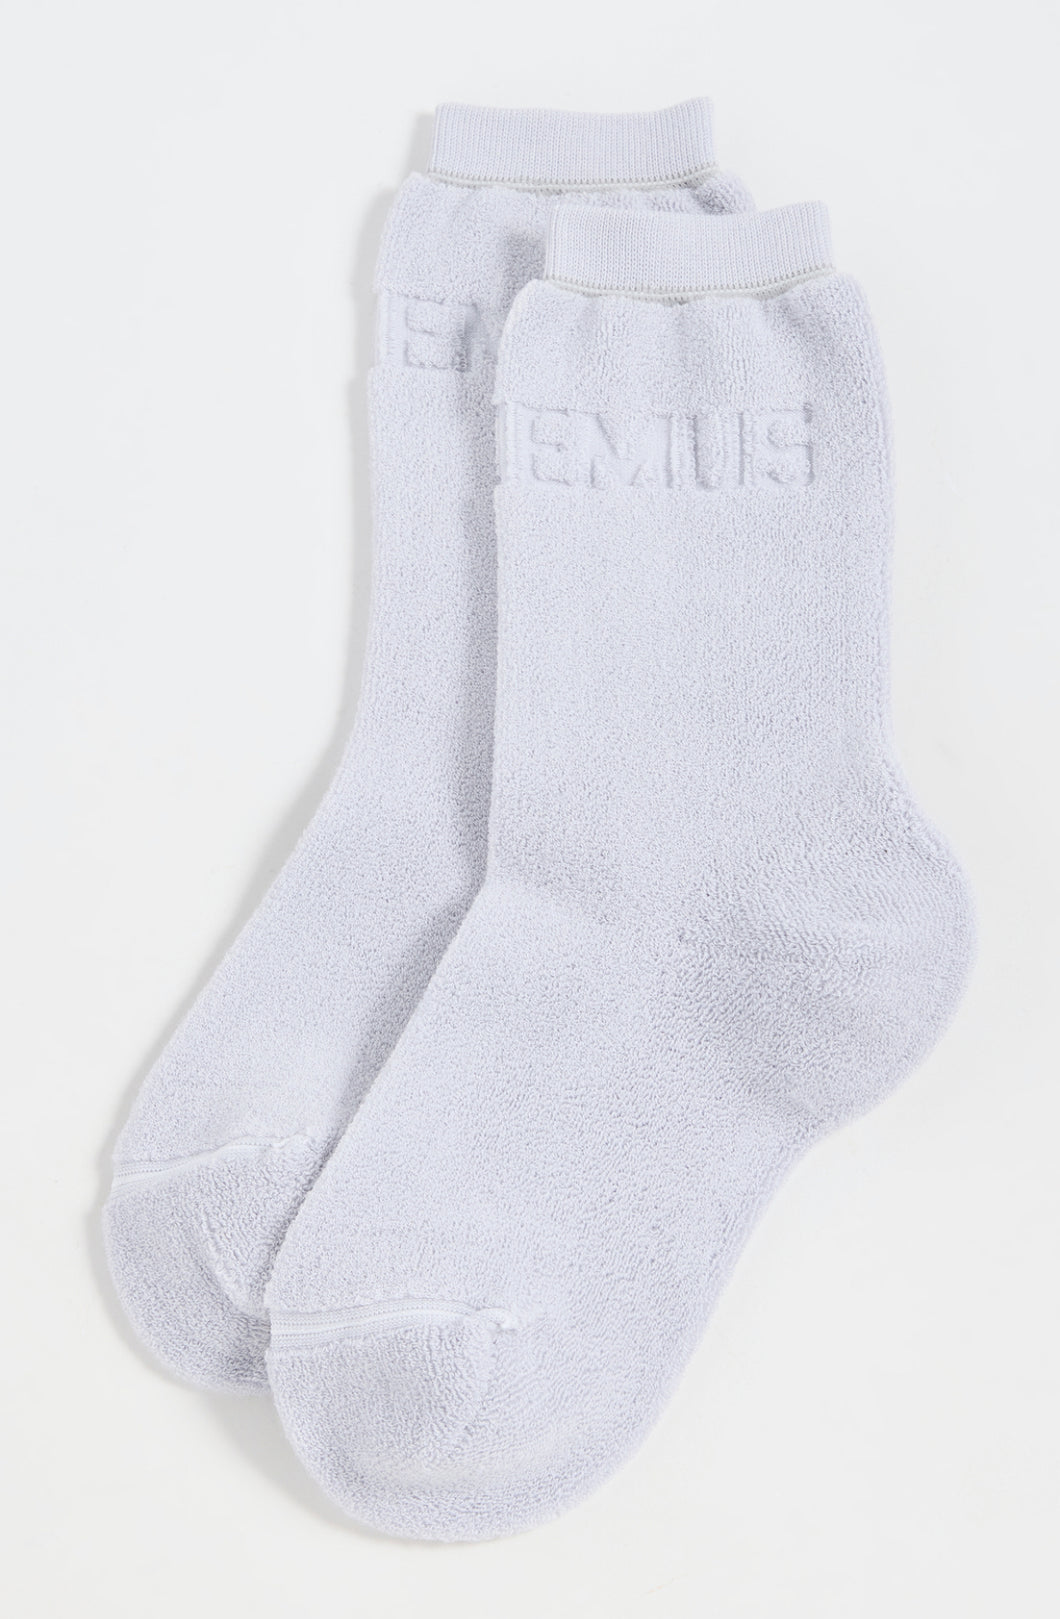 Le Chausettes Logo Socks